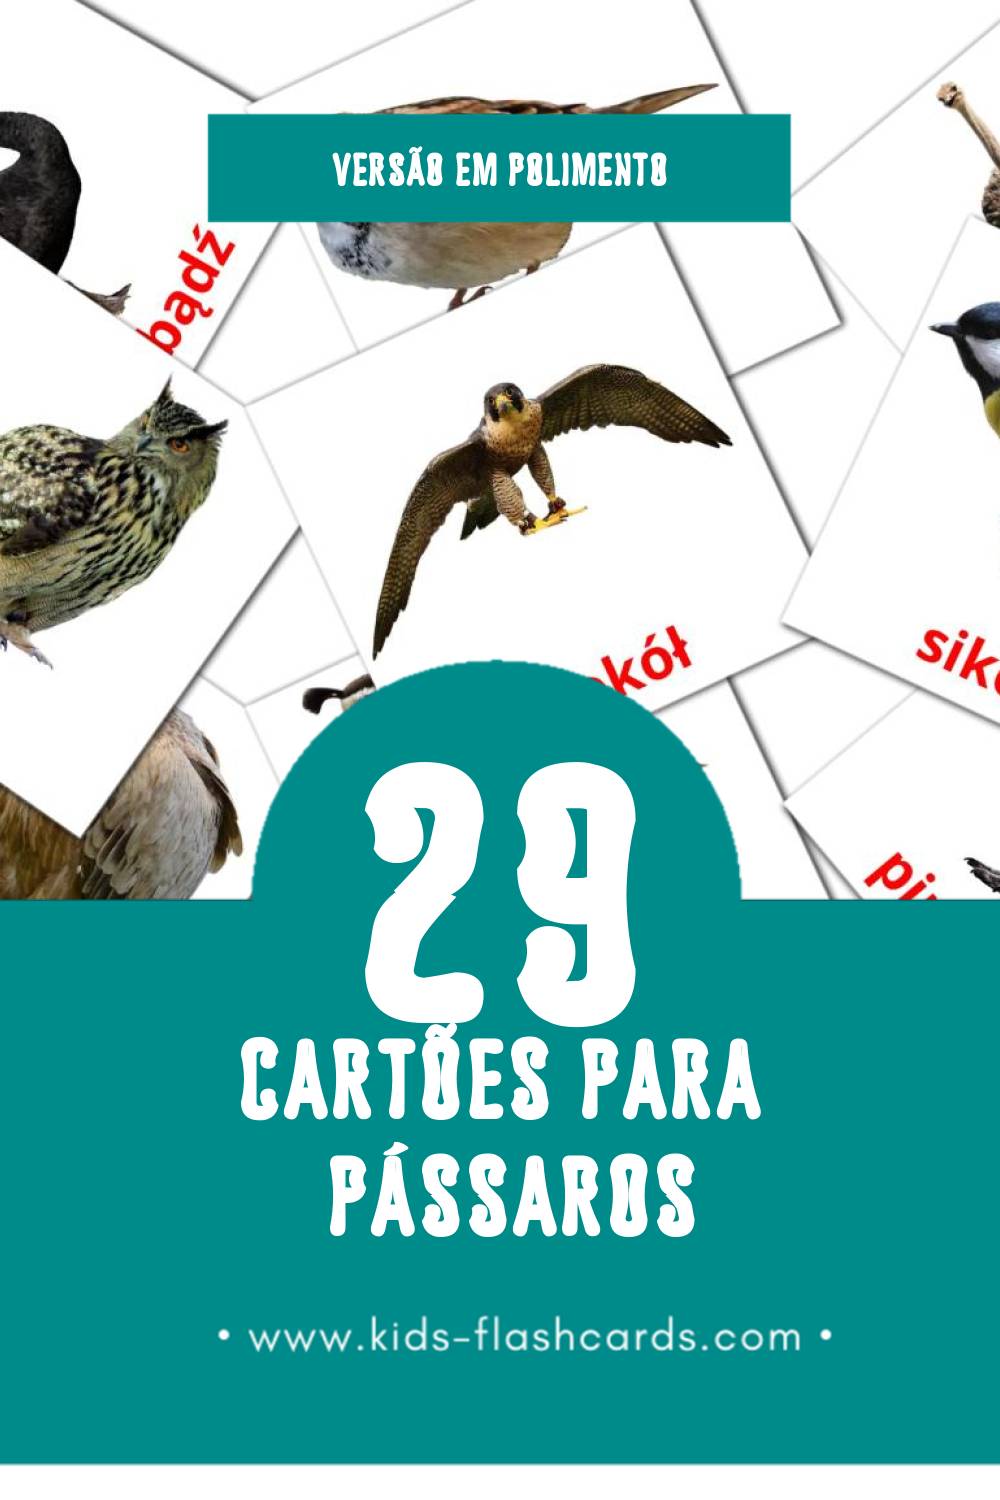 Flashcards de Ptaki Visuais para Toddlers (29 cartões em Polimento)